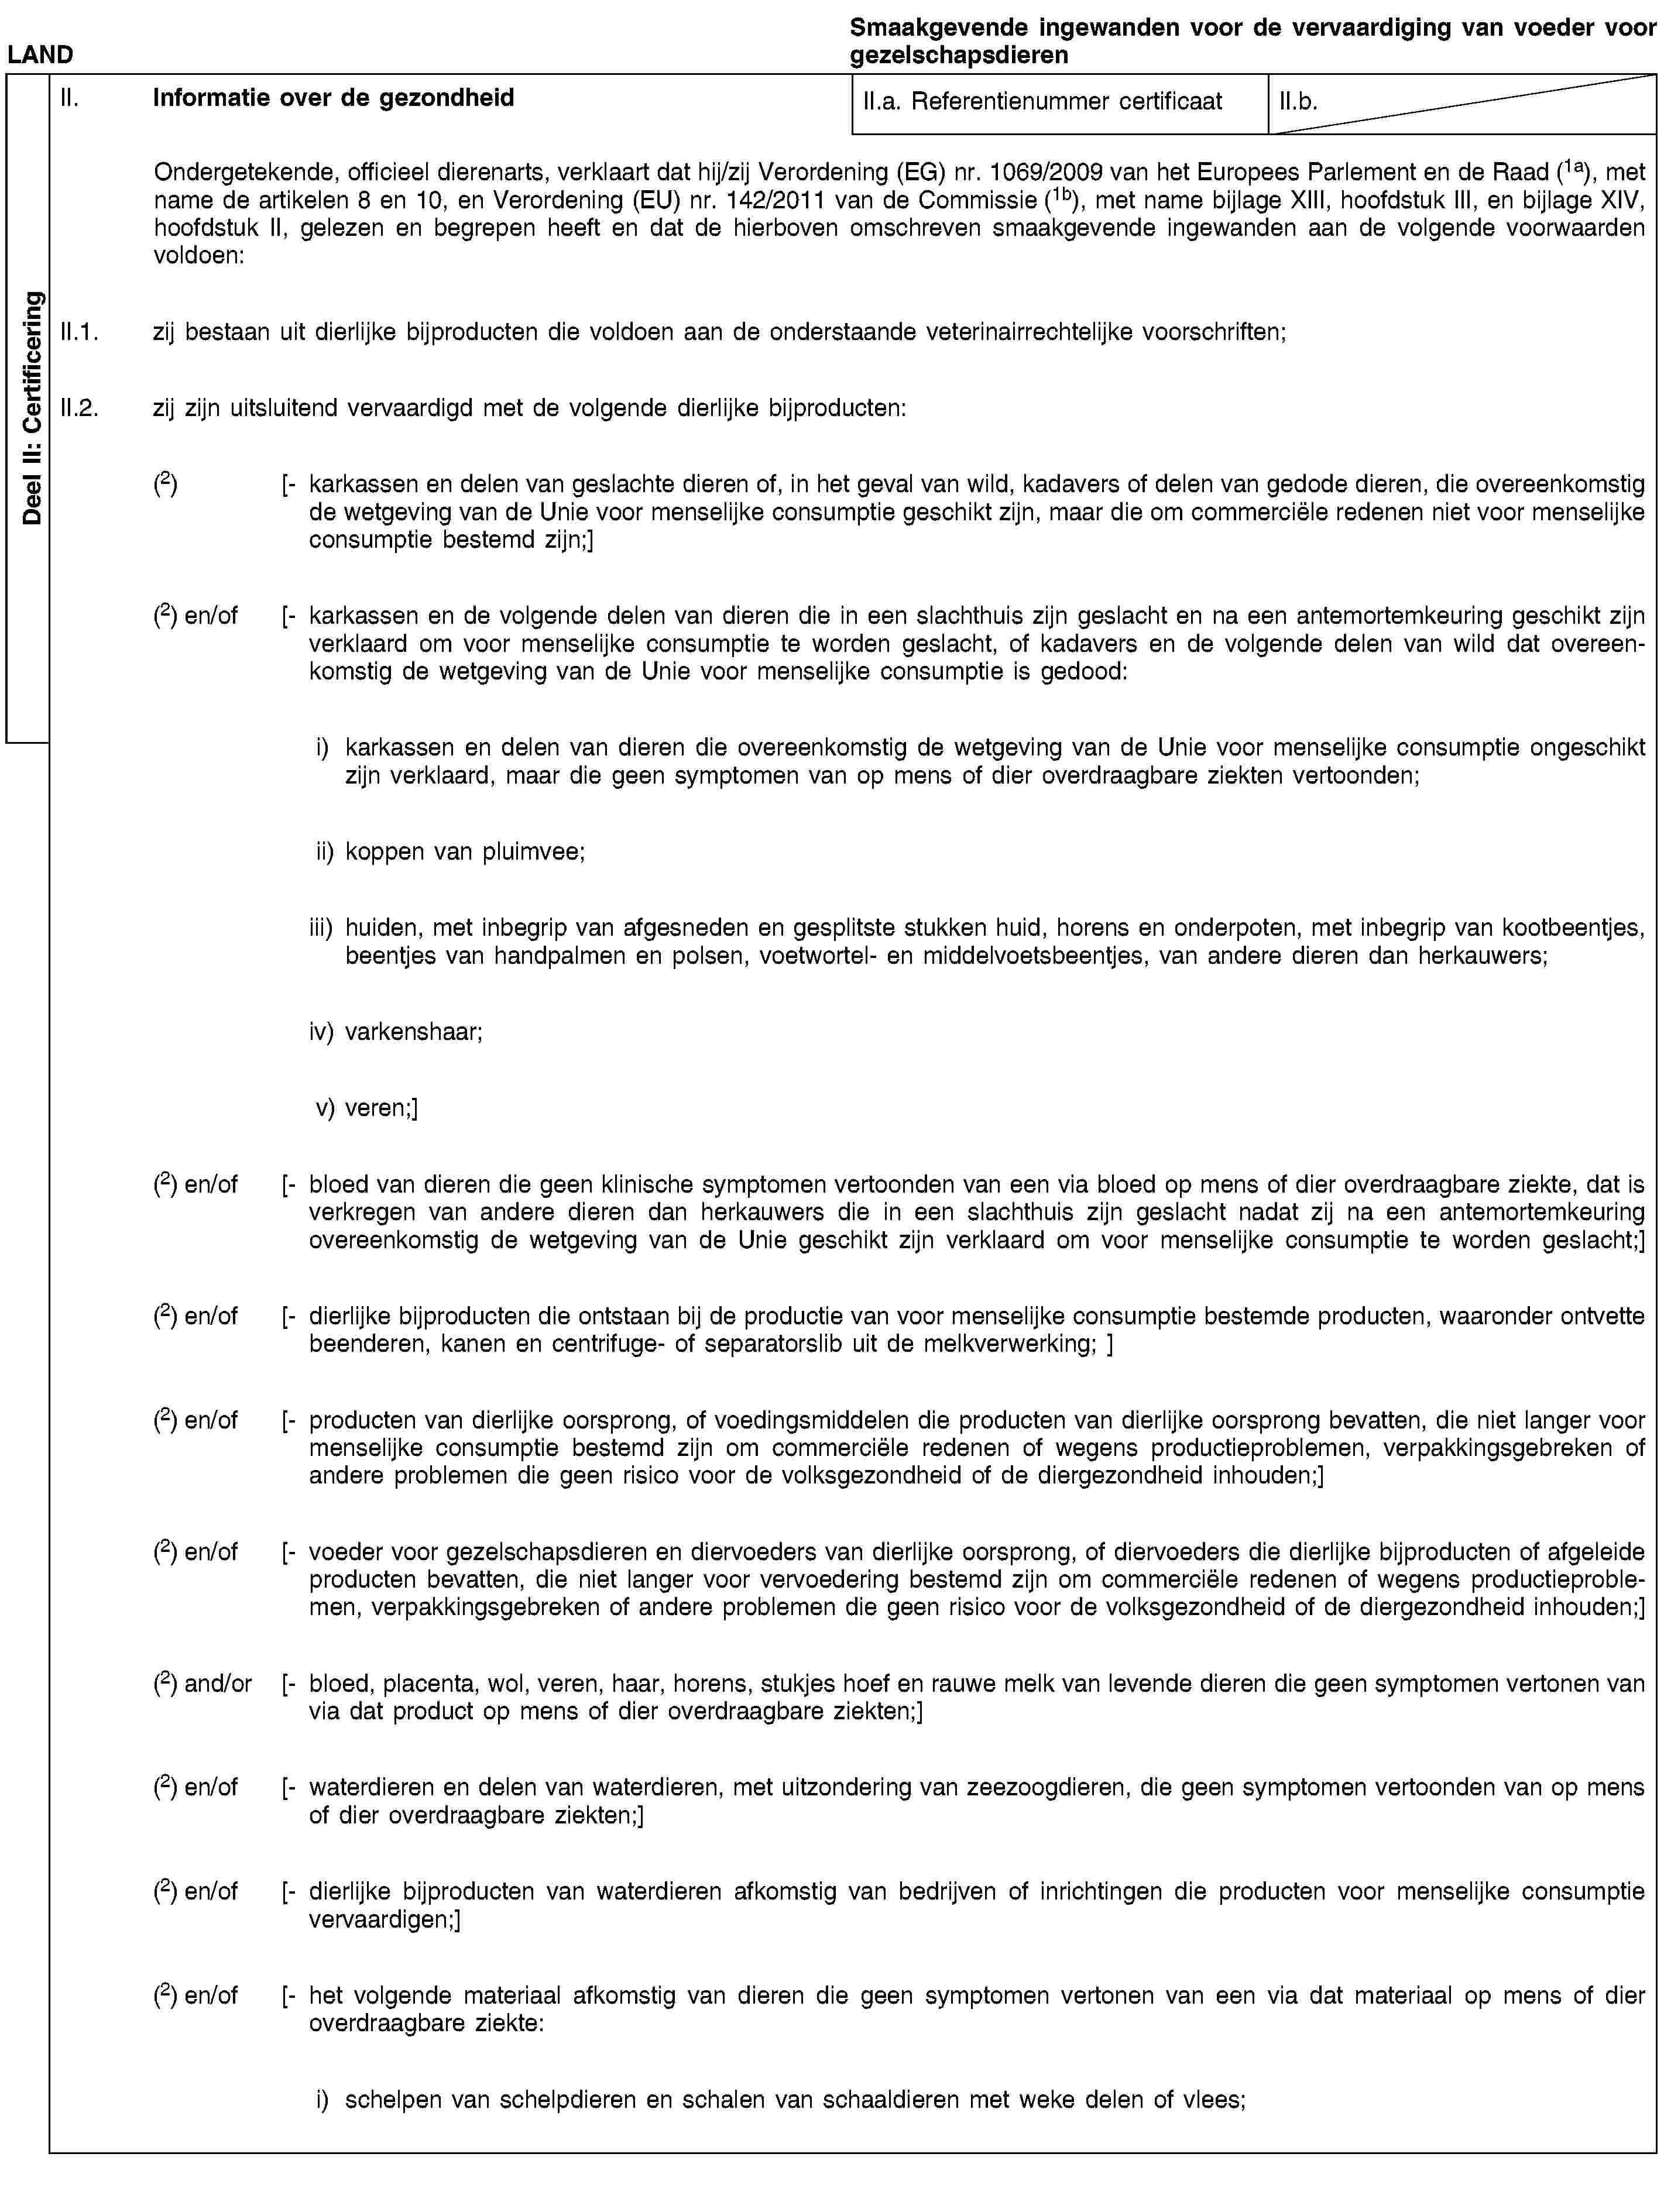 Deel II: CertificeringLANDSmaakgevende ingewanden voor de vervaardiging van voeder voor gezelschapsdierenII. Informatie over de gezondheidII.a. Referentienummer certificaatII.b.Ondergetekende, officieel dierenarts, verklaart dat hij/zij Verordening (EG) nr. 1069/2009 van het Europees Parlement en de Raad (1a), met name de artikelen 8 en 10, en Verordening (EU) nr. 142/2011 van de Commissie (1b), met name bijlage XIII, hoofdstuk III, en bijlage XIV, hoofdstuk II, gelezen en begrepen heeft en dat de hierboven omschreven smaakgevende ingewanden aan de volgende voorwaarden voldoen:II.1. zij bestaan uit dierlijke bijproducten die voldoen aan de onderstaande veterinairrechtelijke voorschriften;II.2. zij zijn uitsluitend vervaardigd met de volgende dierlijke bijproducten:(2) [- karkassen en delen van geslachte dieren of, in het geval van wild, kadavers of delen van gedode dieren, die overeenkomstig de wetgeving van de Unie voor menselijke consumptie geschikt zijn, maar die om commerciële redenen niet voor menselijke consumptie bestemd zijn;](2) en/of [- karkassen en de volgende delen van dieren die in een slachthuis zijn geslacht en na een antemortemkeuring geschikt zijn verklaard om voor menselijke consumptie te worden geslacht, of kadavers en de volgende delen van wild dat overeenkomstig de wetgeving van de Unie voor menselijke consumptie is gedood:i) karkassen en delen van dieren die overeenkomstig de wetgeving van de Unie voor menselijke consumptie ongeschikt zijn verklaard, maar die geen symptomen van op mens of dier overdraagbare ziekten vertoonden;ii) koppen van pluimvee;iii) huiden, met inbegrip van afgesneden en gesplitste stukken huid, horens en onderpoten, met inbegrip van kootbeentjes, beentjes van handpalmen en polsen, voetwortel- en middelvoetsbeentjes, van andere dieren dan herkauwers;iv) varkenshaar;v) veren;](2) en/of [- bloed van dieren die geen klinische symptomen vertoonden van een via bloed op mens of dier overdraagbare ziekte, dat is verkregen van andere dieren dan herkauwers die in een slachthuis zijn geslacht nadat zij na een antemortemkeuring overeenkomstig de wetgeving van de Unie geschikt zijn verklaard om voor menselijke consumptie te worden geslacht;](2) en/of [- dierlijke bijproducten die ontstaan bij de productie van voor menselijke consumptie bestemde producten, waaronder ontvette beenderen, kanen en centrifuge- of separatorslib uit de melkverwerking; ](2) en/of [- producten van dierlijke oorsprong, of voedingsmiddelen die producten van dierlijke oorsprong bevatten, die niet langer voor menselijke consumptie bestemd zijn om commerciële redenen of wegens productieproblemen, verpakkingsgebreken of andere problemen die geen risico voor de volksgezondheid of de diergezondheid inhouden;](2) en/of [- voeder voor gezelschapsdieren en diervoeders van dierlijke oorsprong, of diervoeders die dierlijke bijproducten of afgeleide producten bevatten, die niet langer voor vervoedering bestemd zijn om commerciële redenen of wegens productieproblemen, verpakkingsgebreken of andere problemen die geen risico voor de volksgezondheid of de diergezondheid inhouden;](2) and/or [- bloed, placenta, wol, veren, haar, horens, stukjes hoef en rauwe melk van levende dieren die geen symptomen vertonen van via dat product op mens of dier overdraagbare ziekten;](2) en/of [- waterdieren en delen van waterdieren, met uitzondering van zeezoogdieren, die geen symptomen vertoonden van op mens of dier overdraagbare ziekten;](2) en/of [- dierlijke bijproducten van waterdieren afkomstig van bedrijven of inrichtingen die producten voor menselijke consumptie vervaardigen;](2) en/of [- het volgende materiaal afkomstig van dieren die geen symptomen vertonen van een via dat materiaal op mens of dier overdraagbare ziekte:i) schelpen van schelpdieren en schalen van schaaldieren met weke delen of vlees;